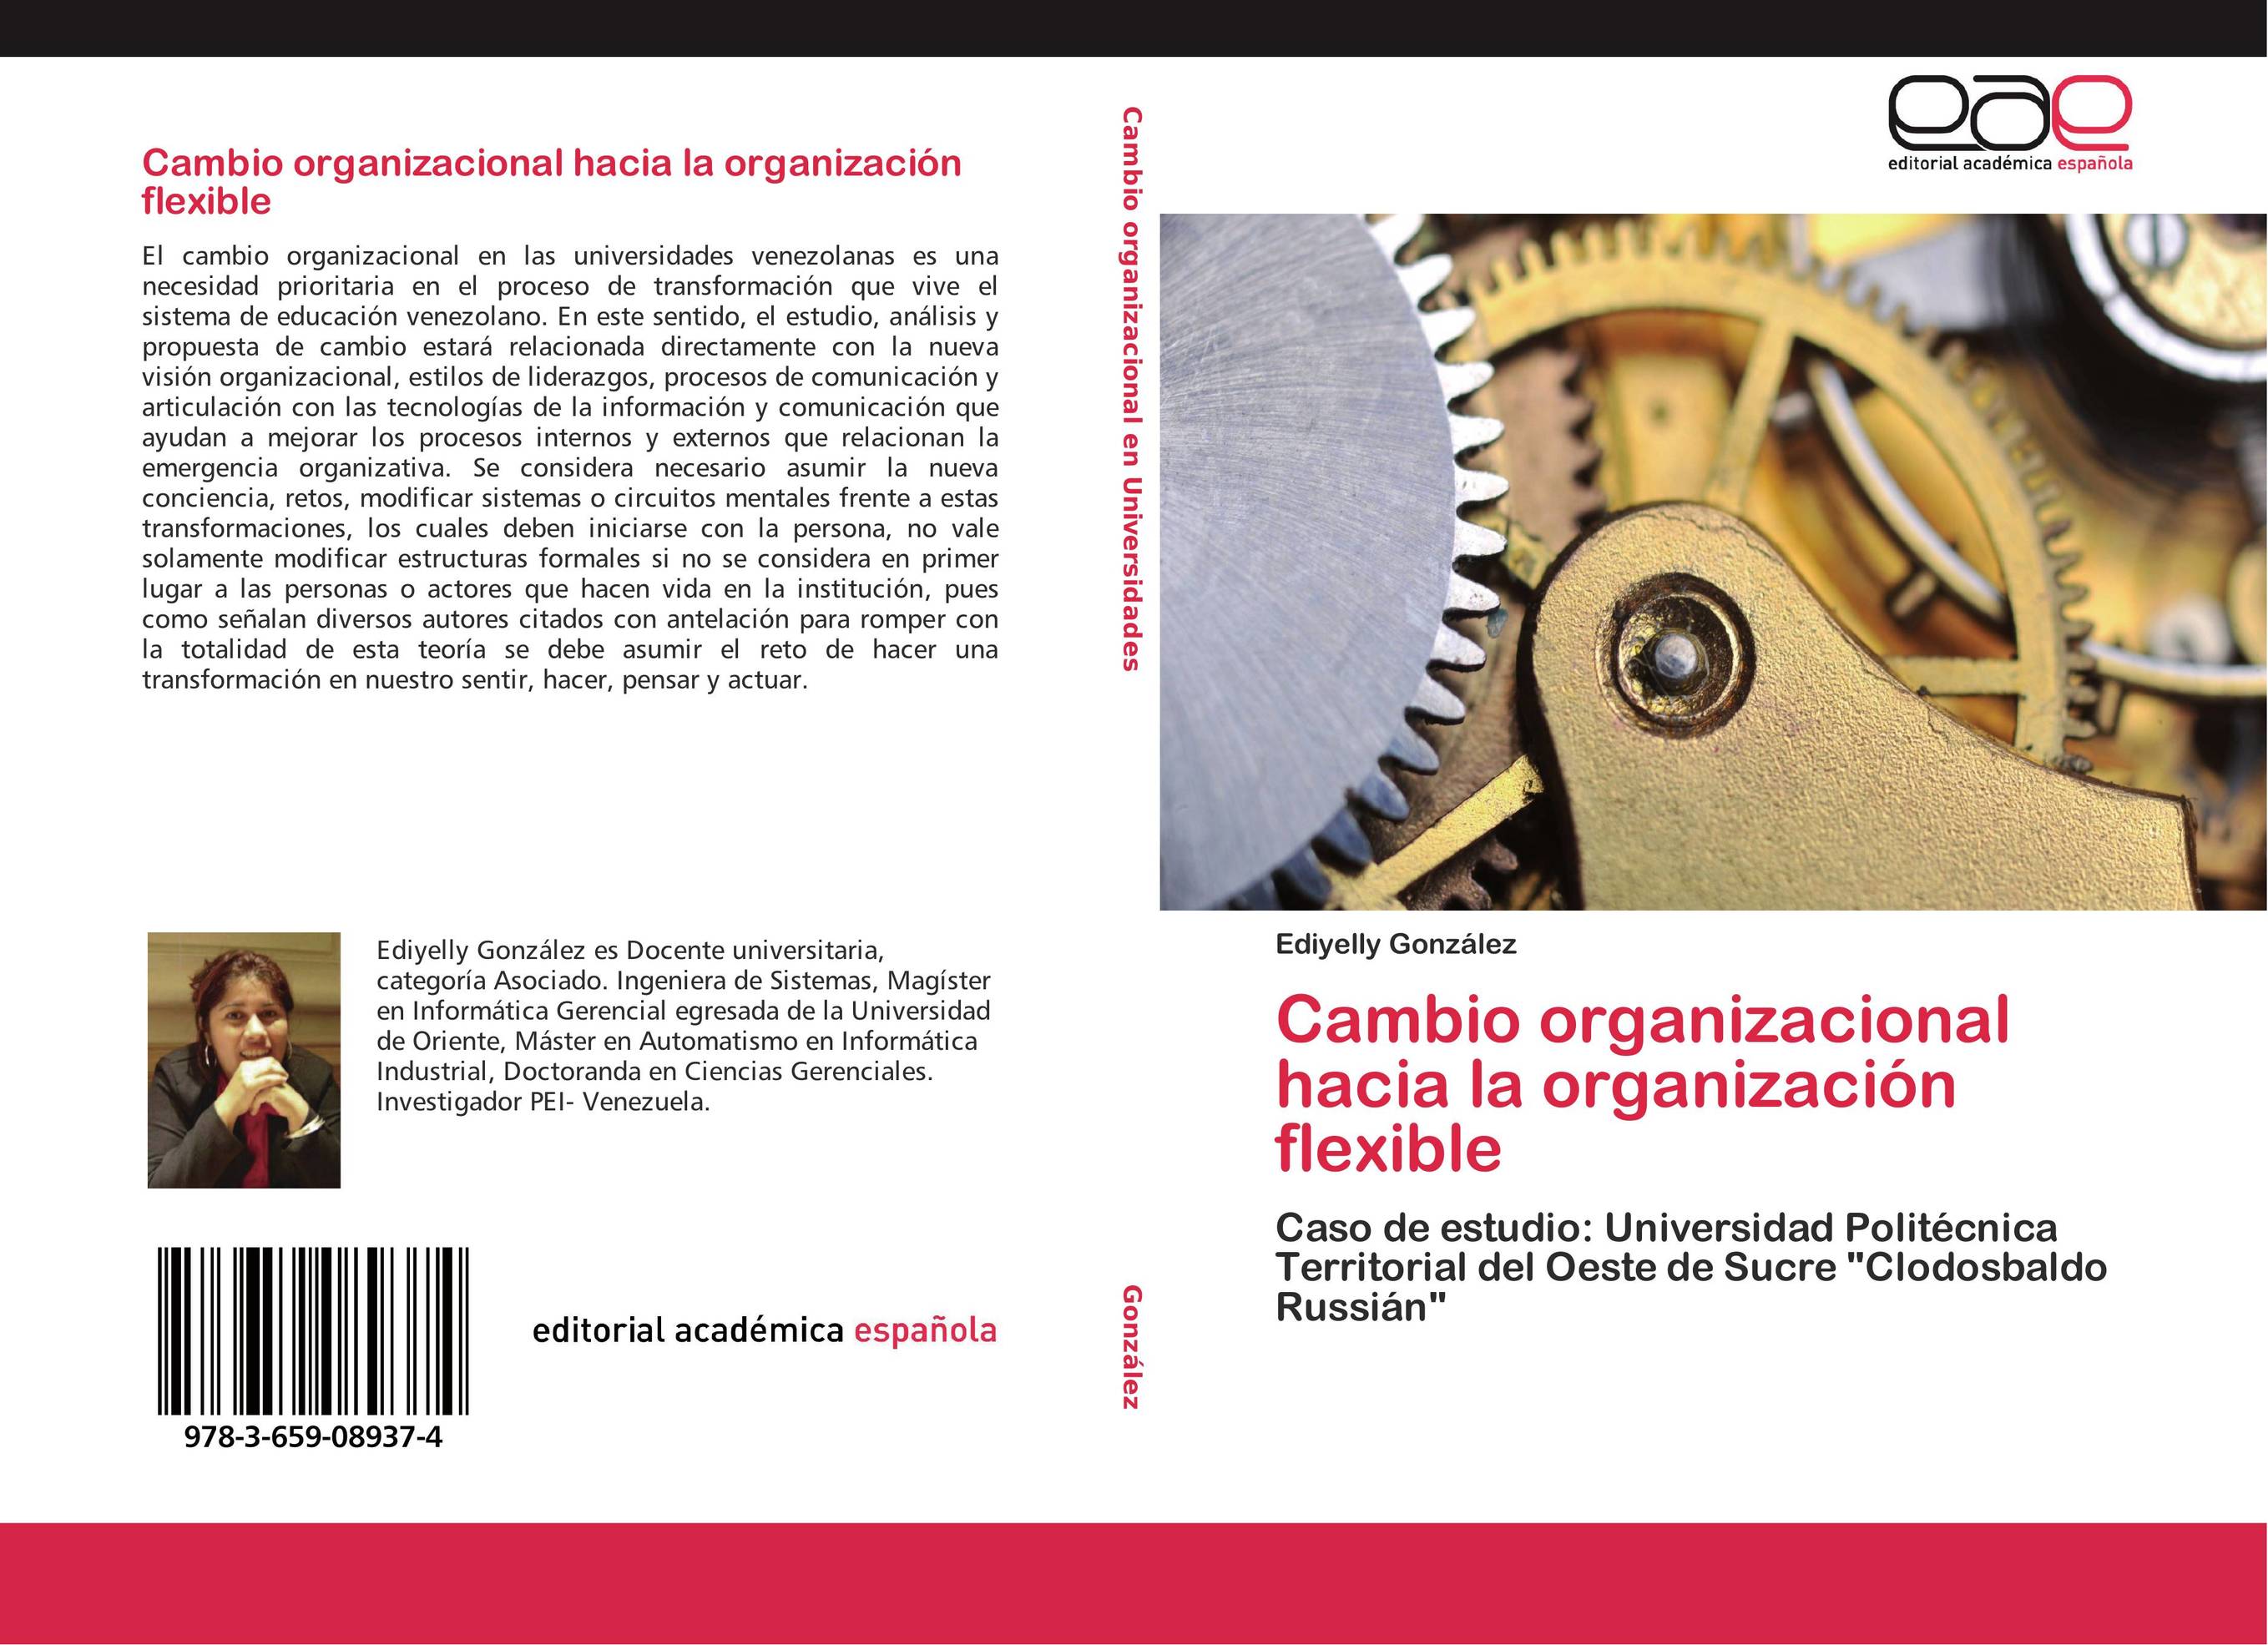 Cambio organizacional hacia la organización flexible